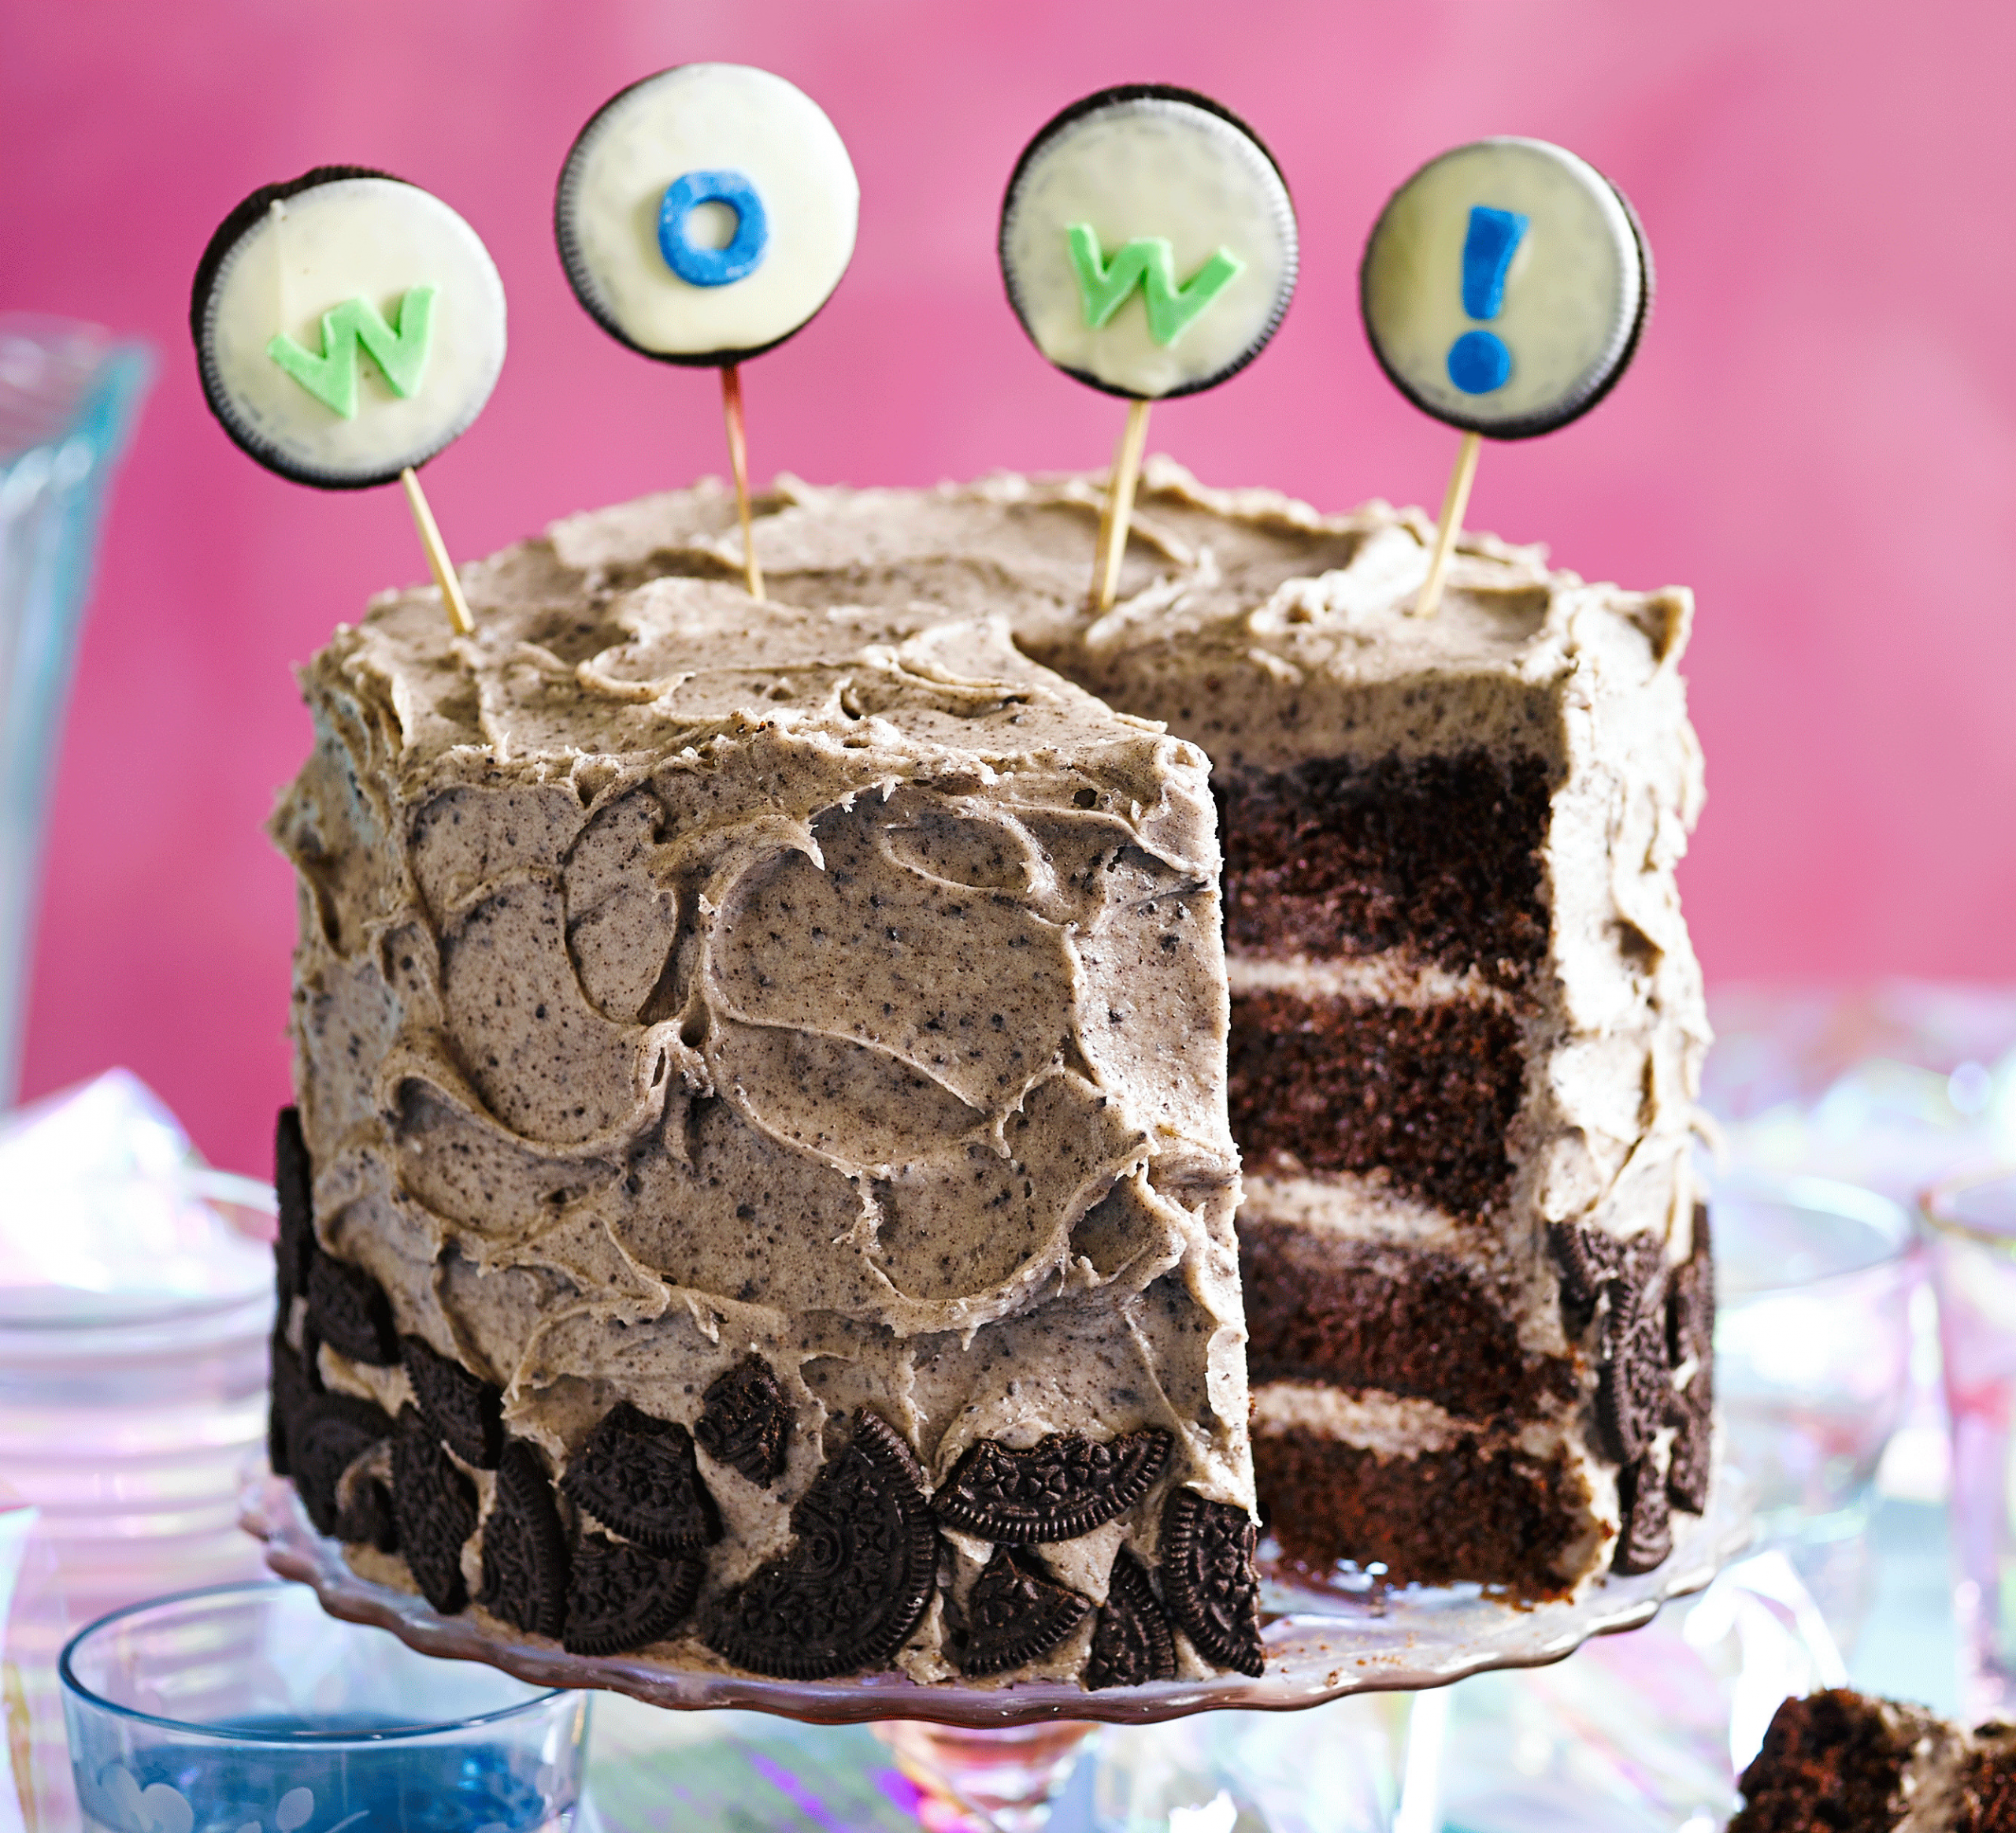 Good Birthday Cakes
 Cookies & cream party cake recipe